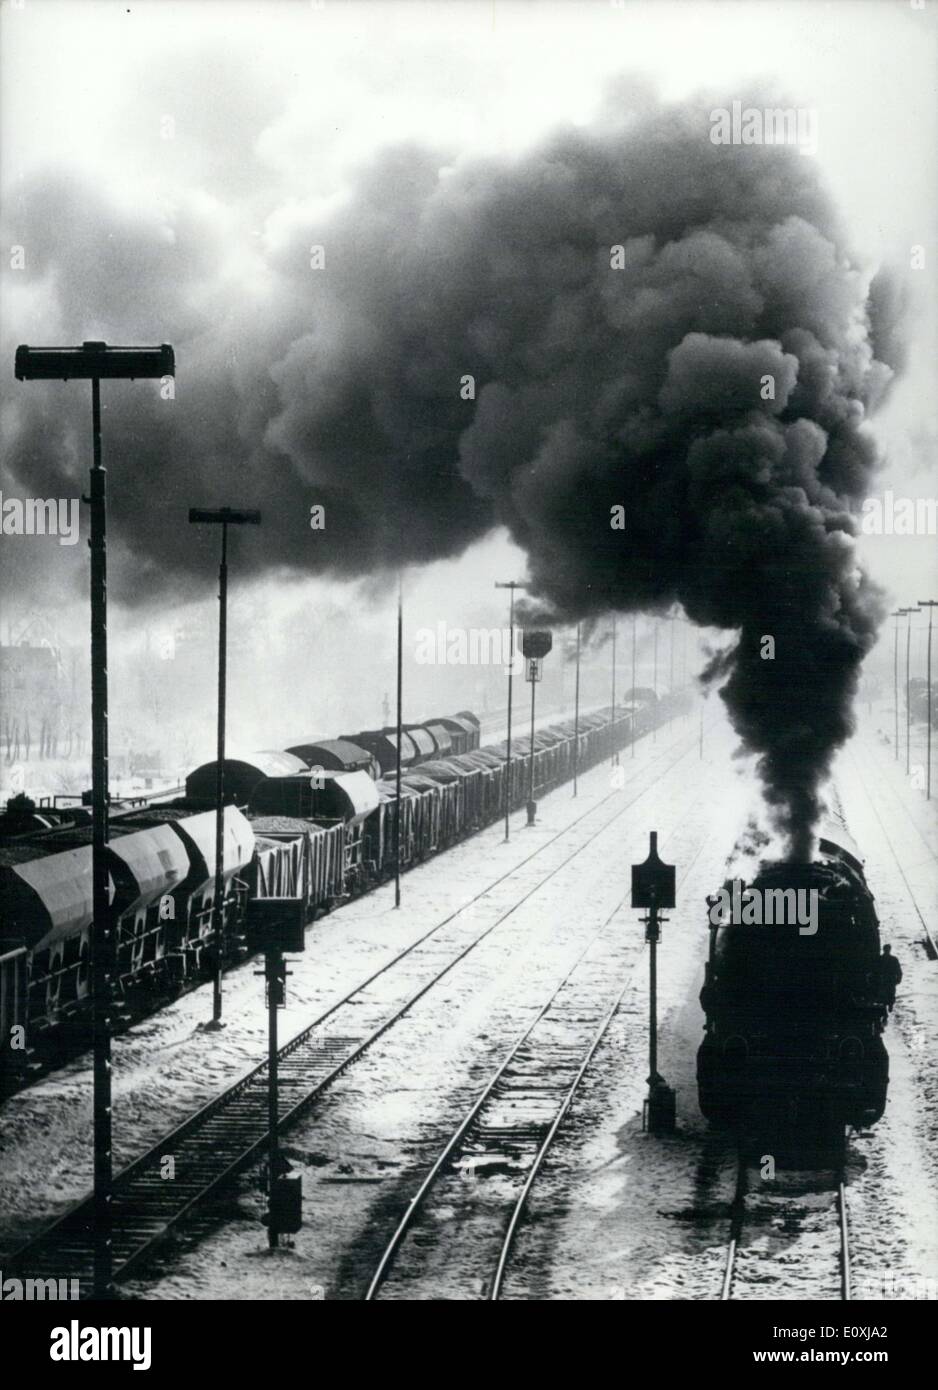 Gen 19, 1967 - questa locomotiva, una delle ultime del suo genere in Germania, è Full Steam Ahead sulle rotaie. Esso è caricato verso il basso con carico pesante e deve fare un viaggio di centinaia di chilometri prima di raggiungere la sua destinazione. Foto Stock